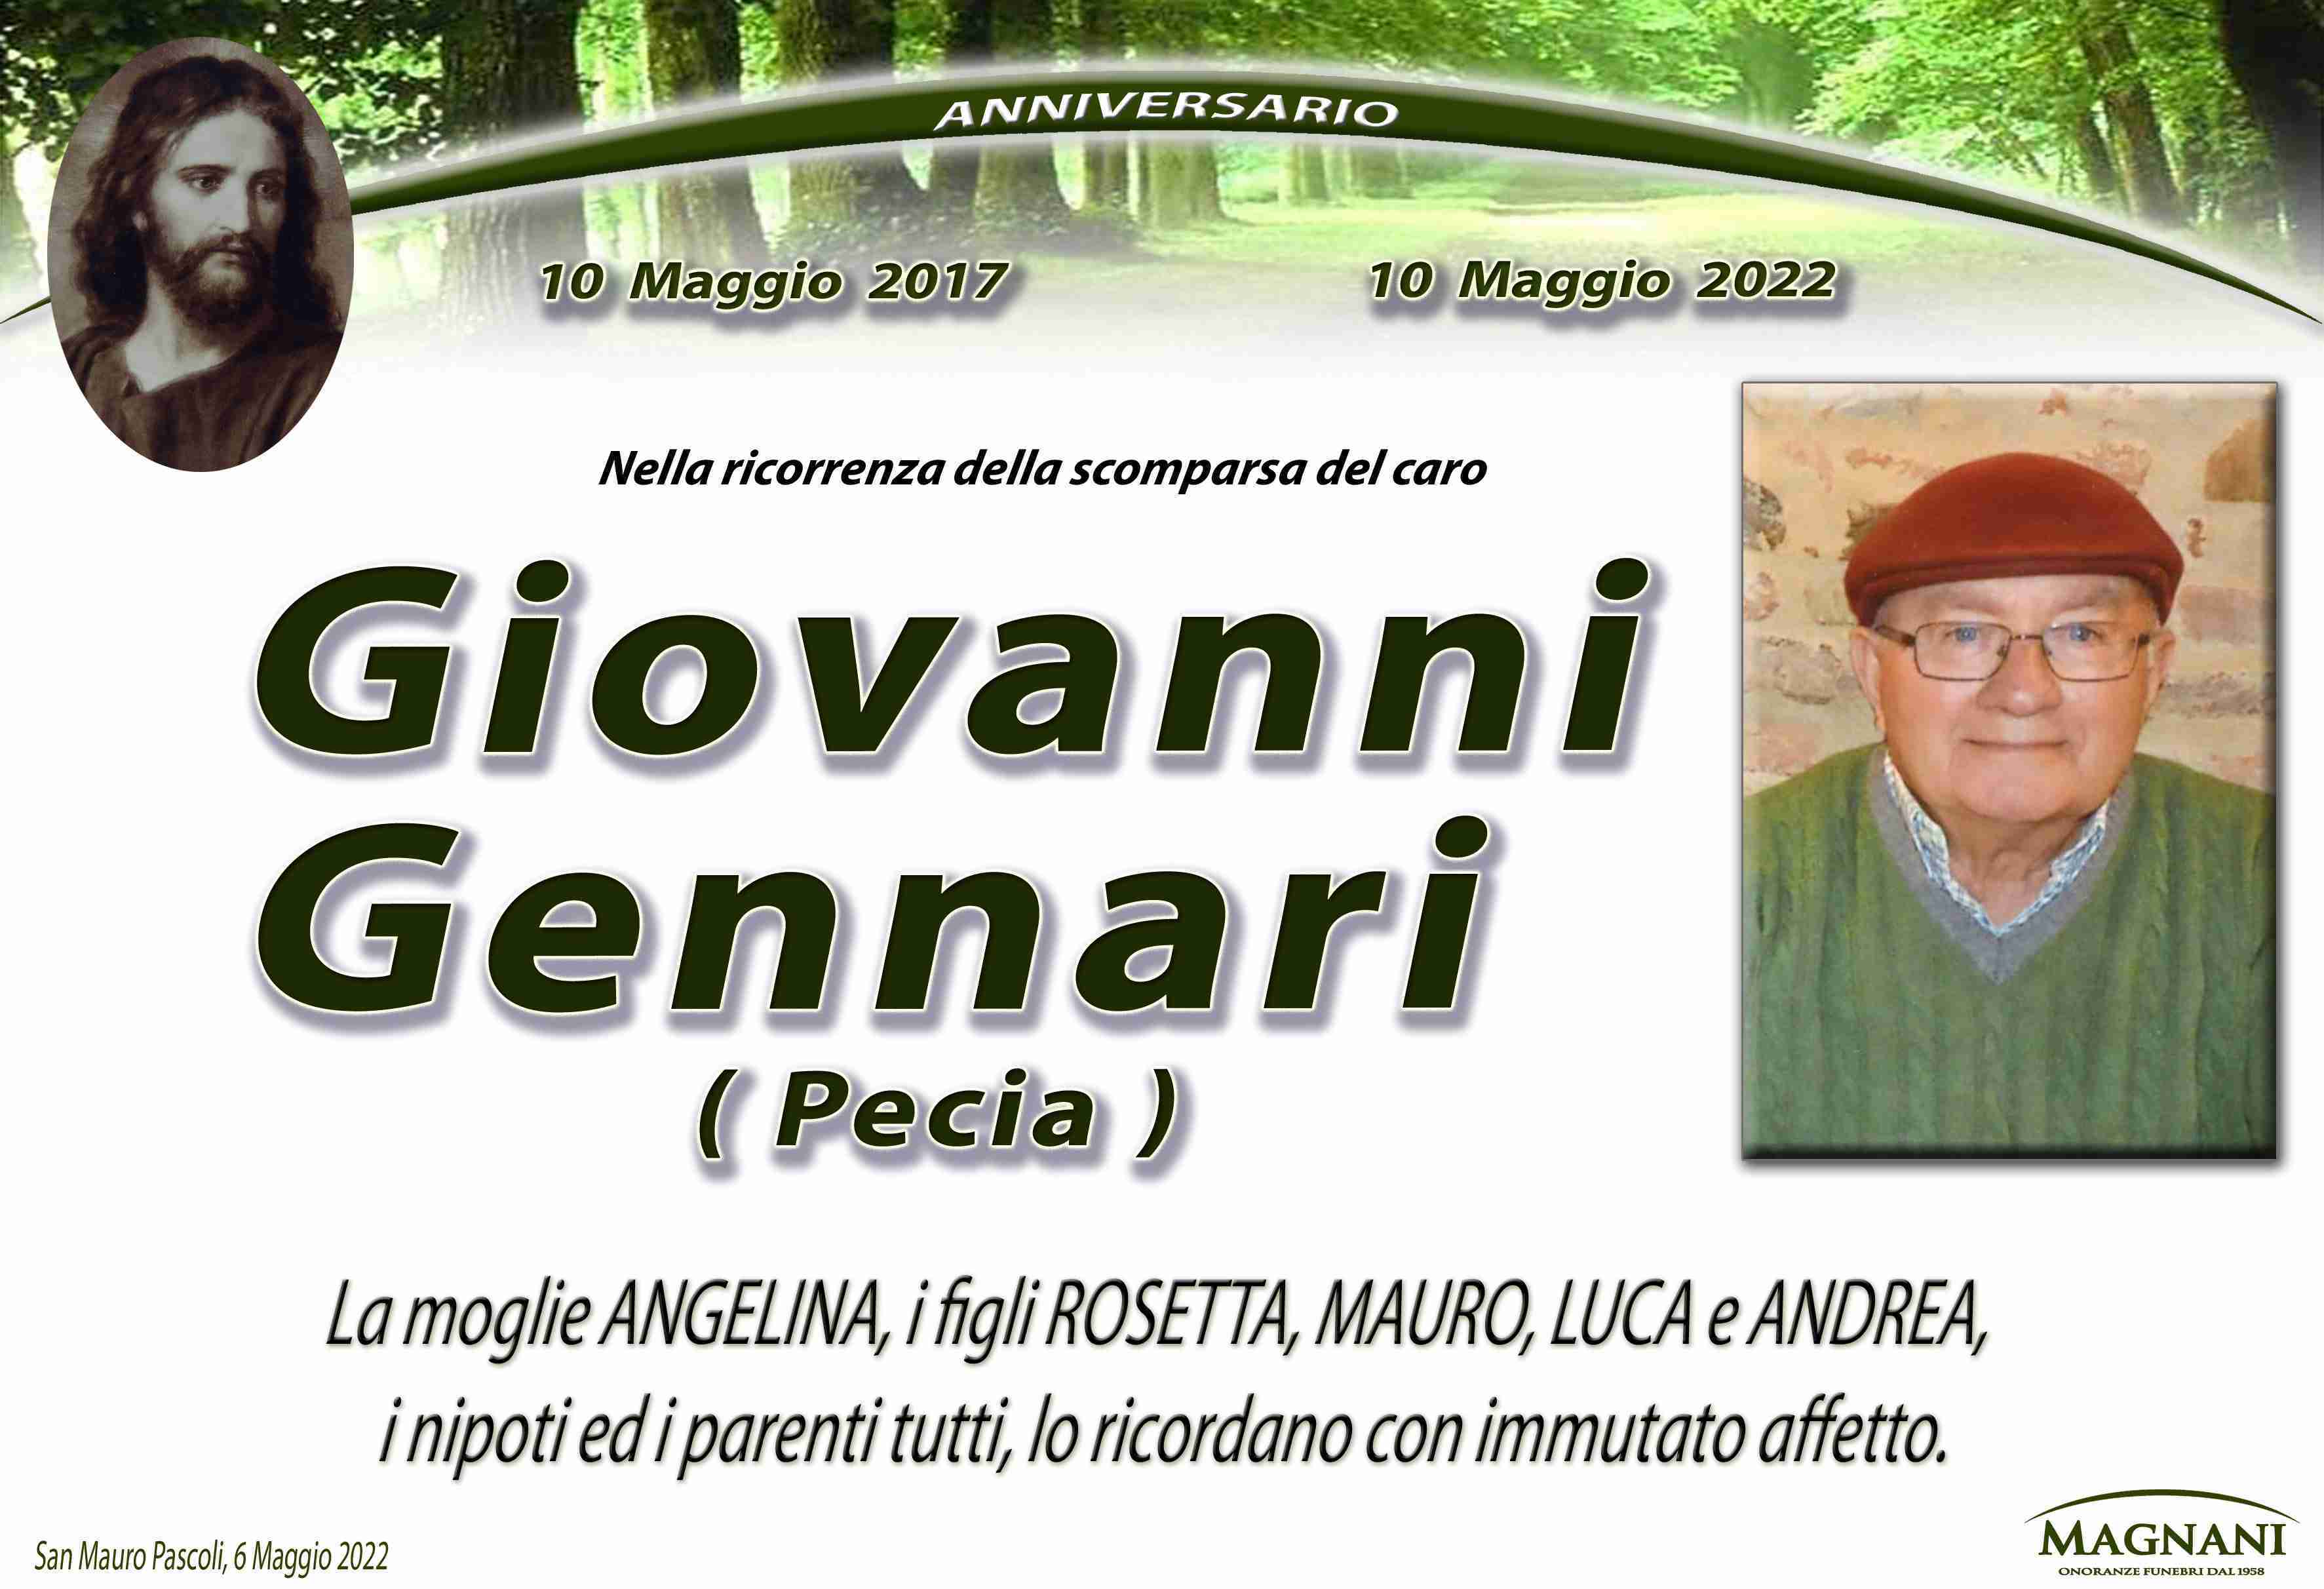 Giovanni Gennari